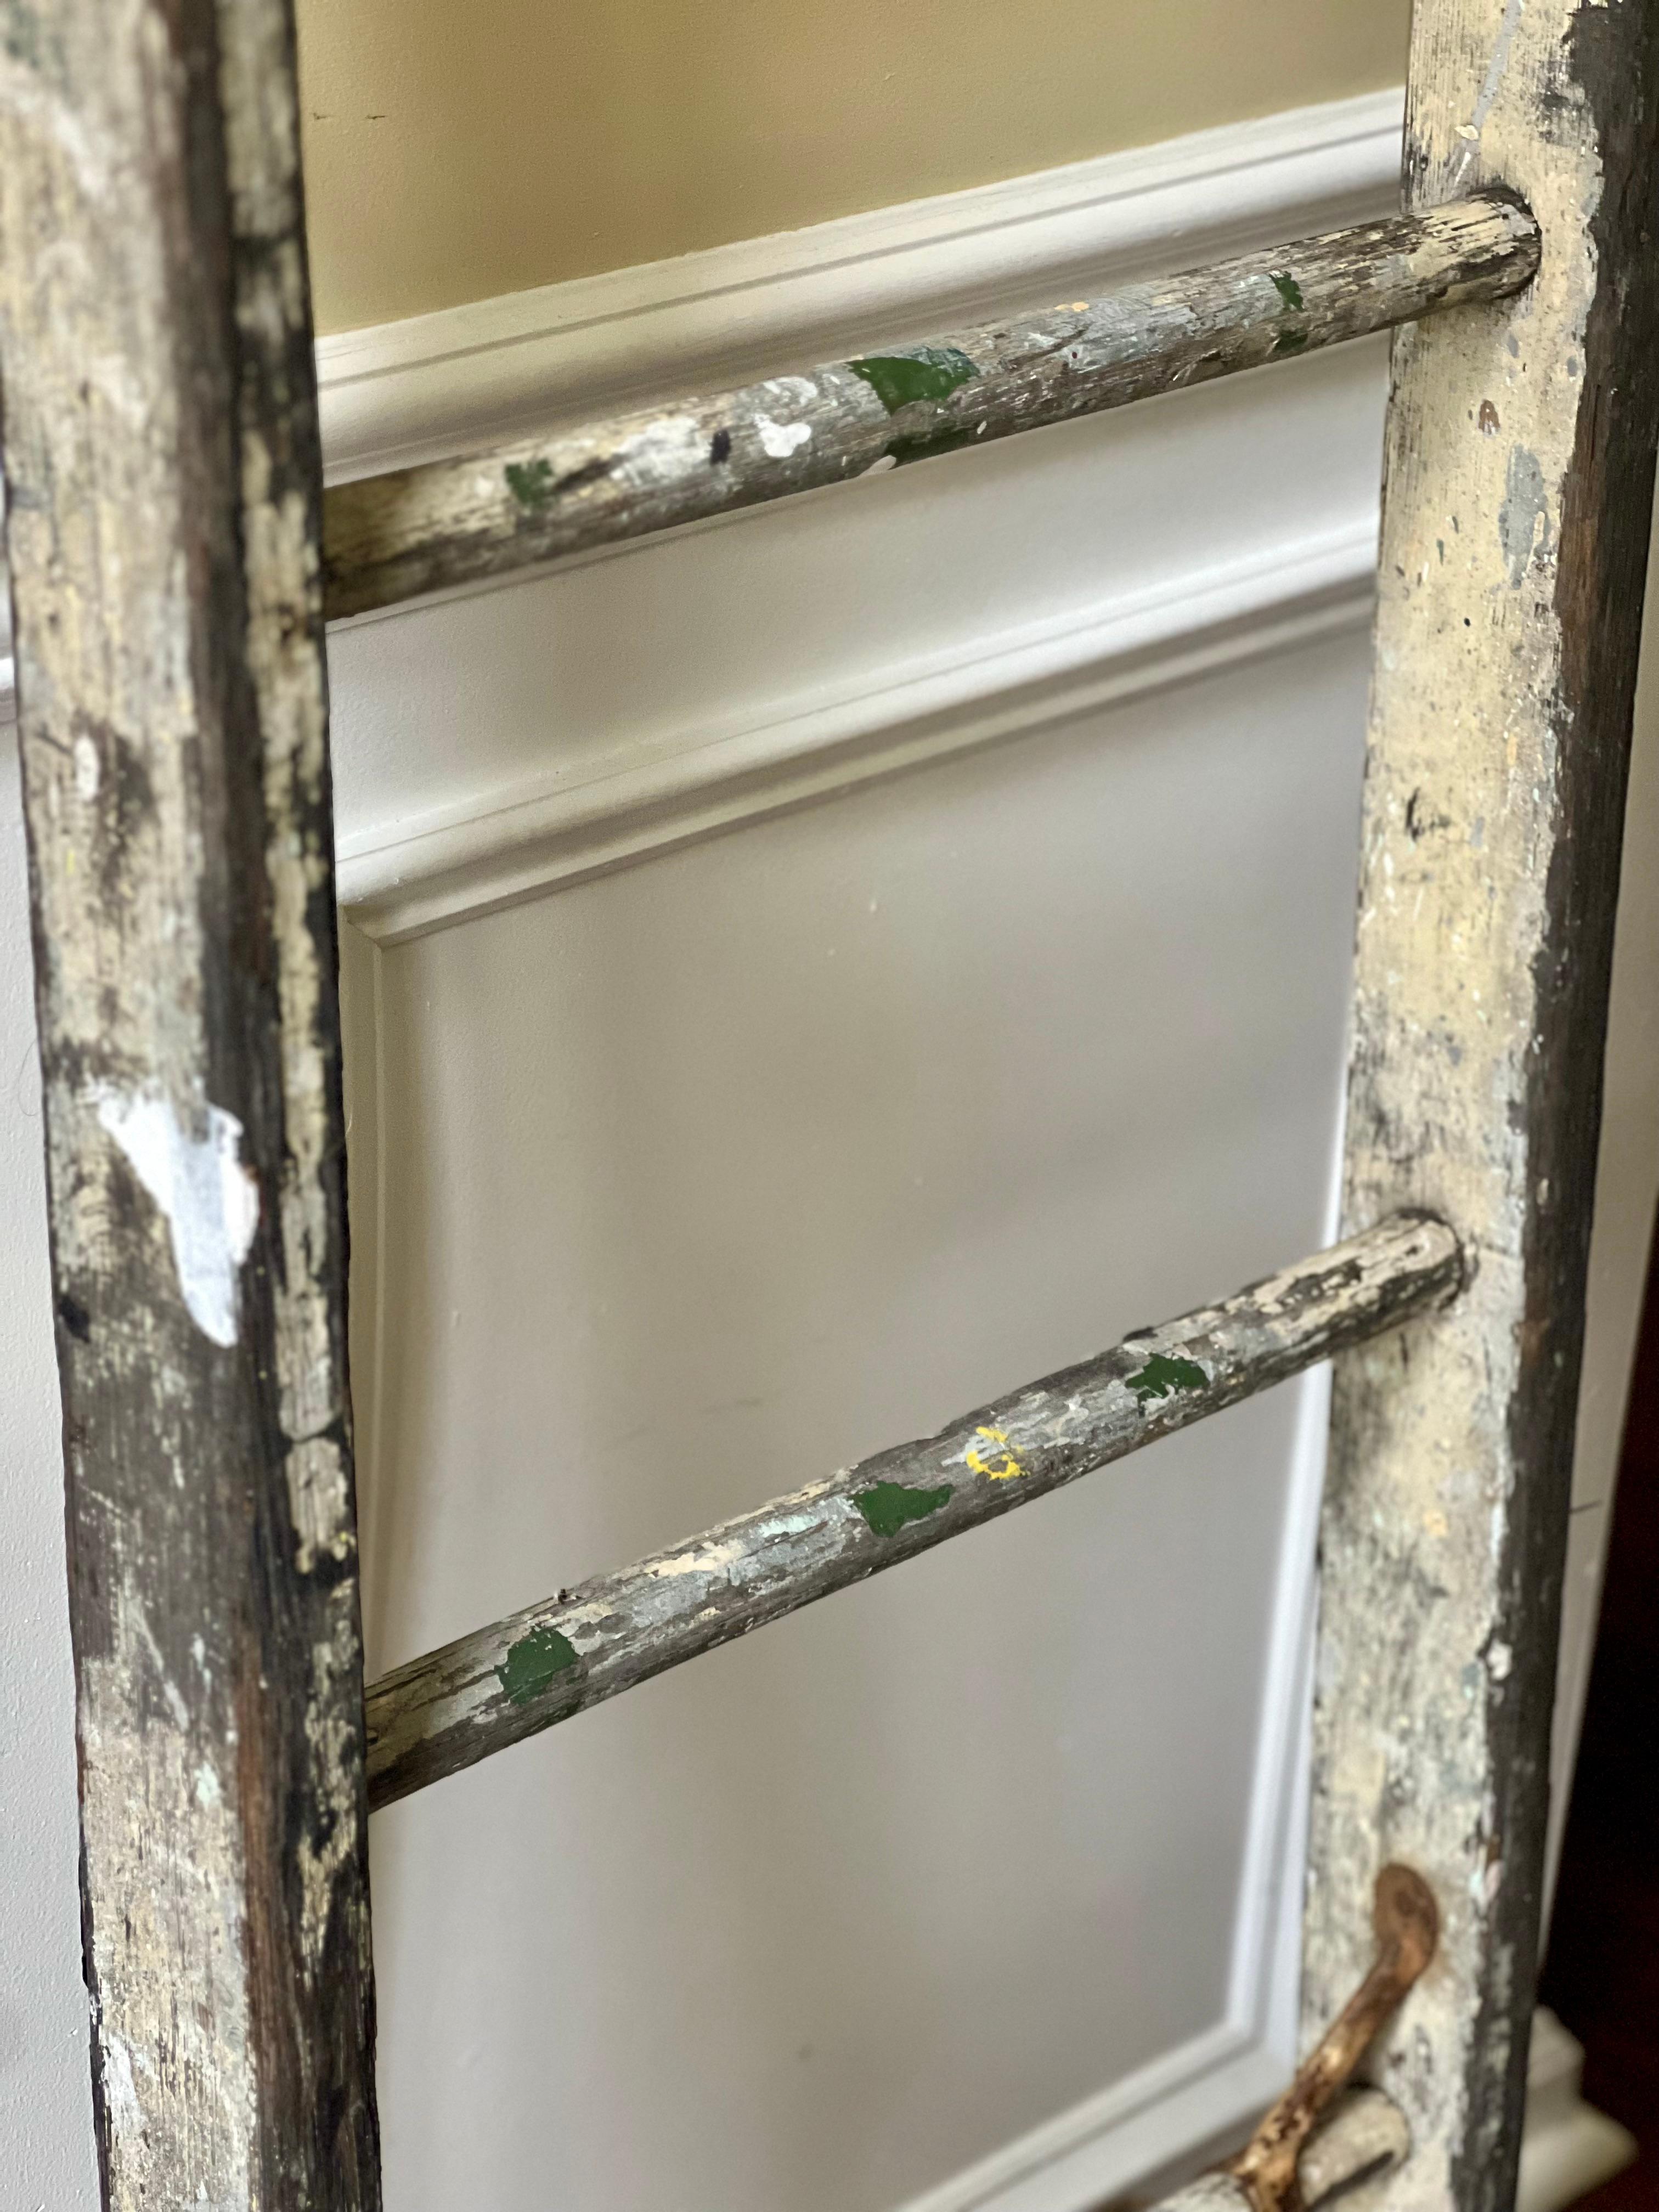 Metal Antique Rustic Primitive Wood Ladder For Sale